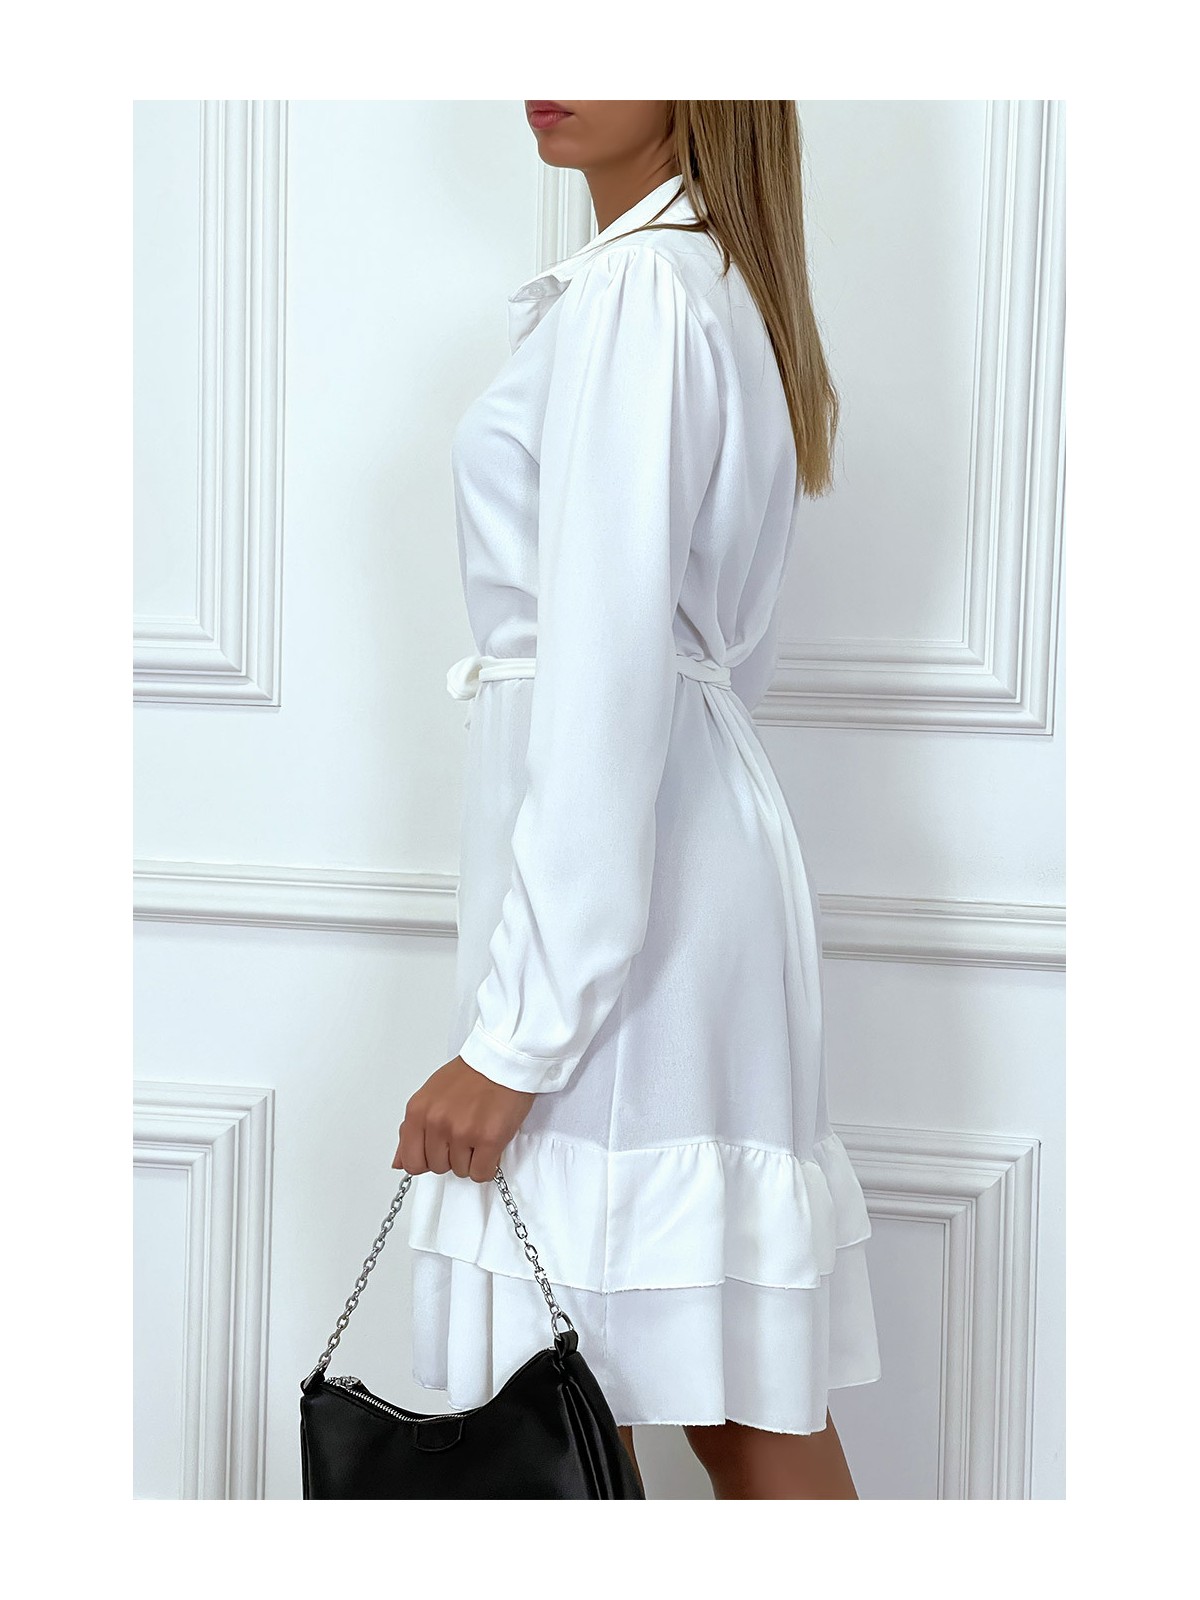 Robe tunique blanche manches longues boutonné avec volant - 4